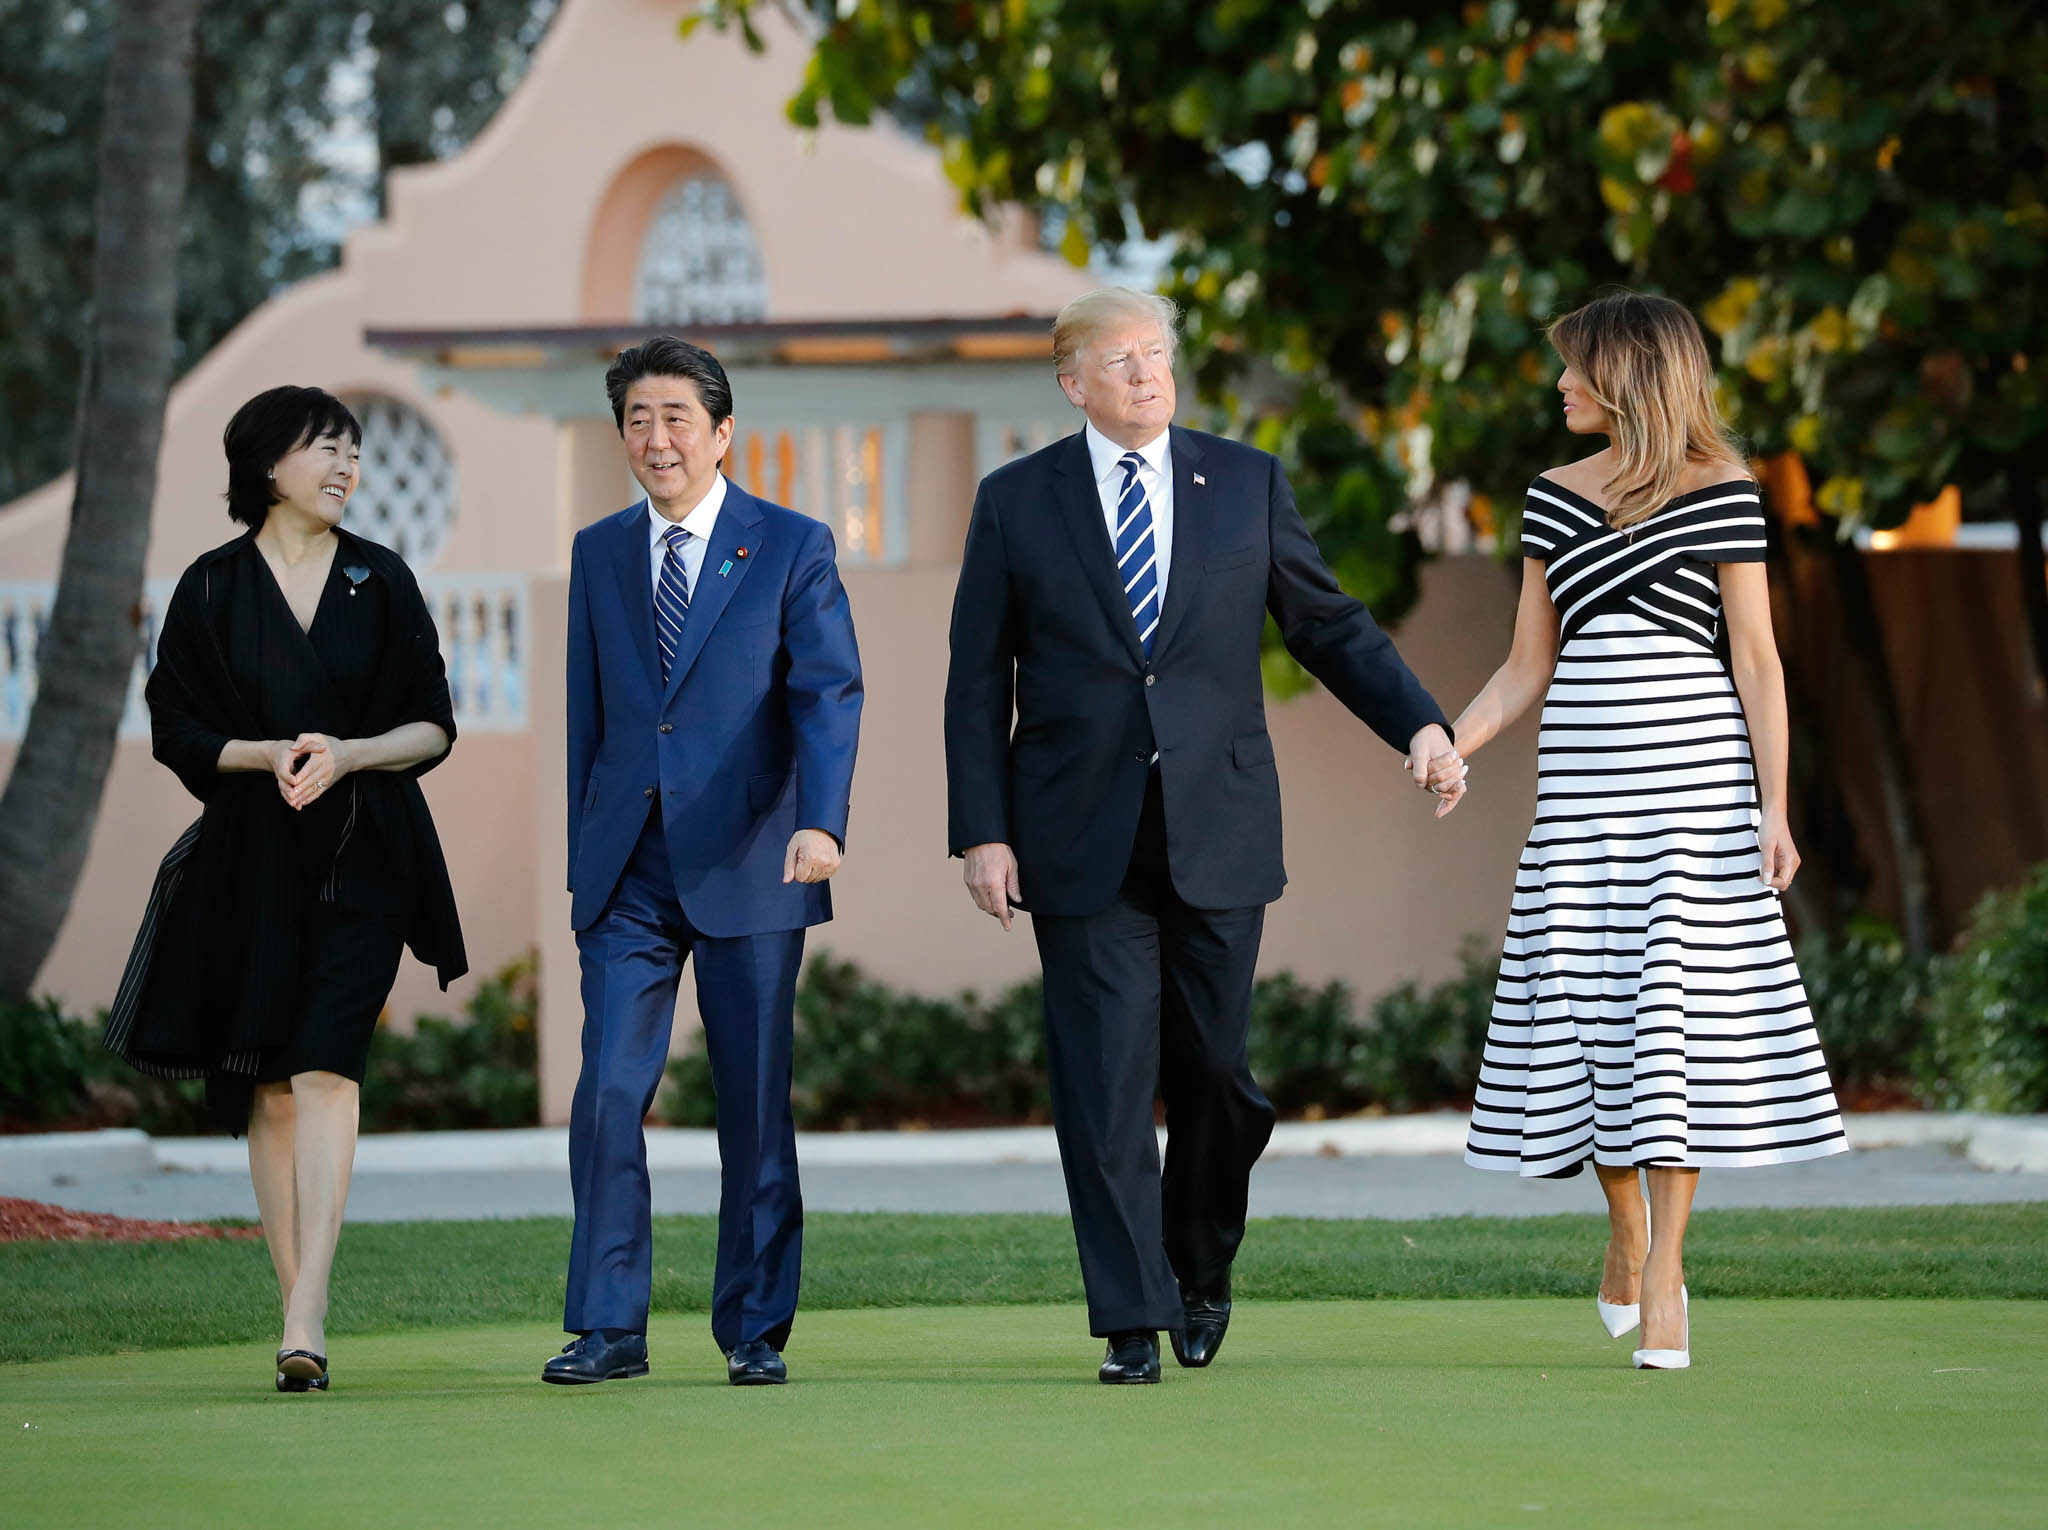 フロリダ州にあるトランプ大統領のプライベートクラブを歩く安部首相夫妻とトランプ大統領夫妻 (© Pablo Martinez Monsivais/AP Images)